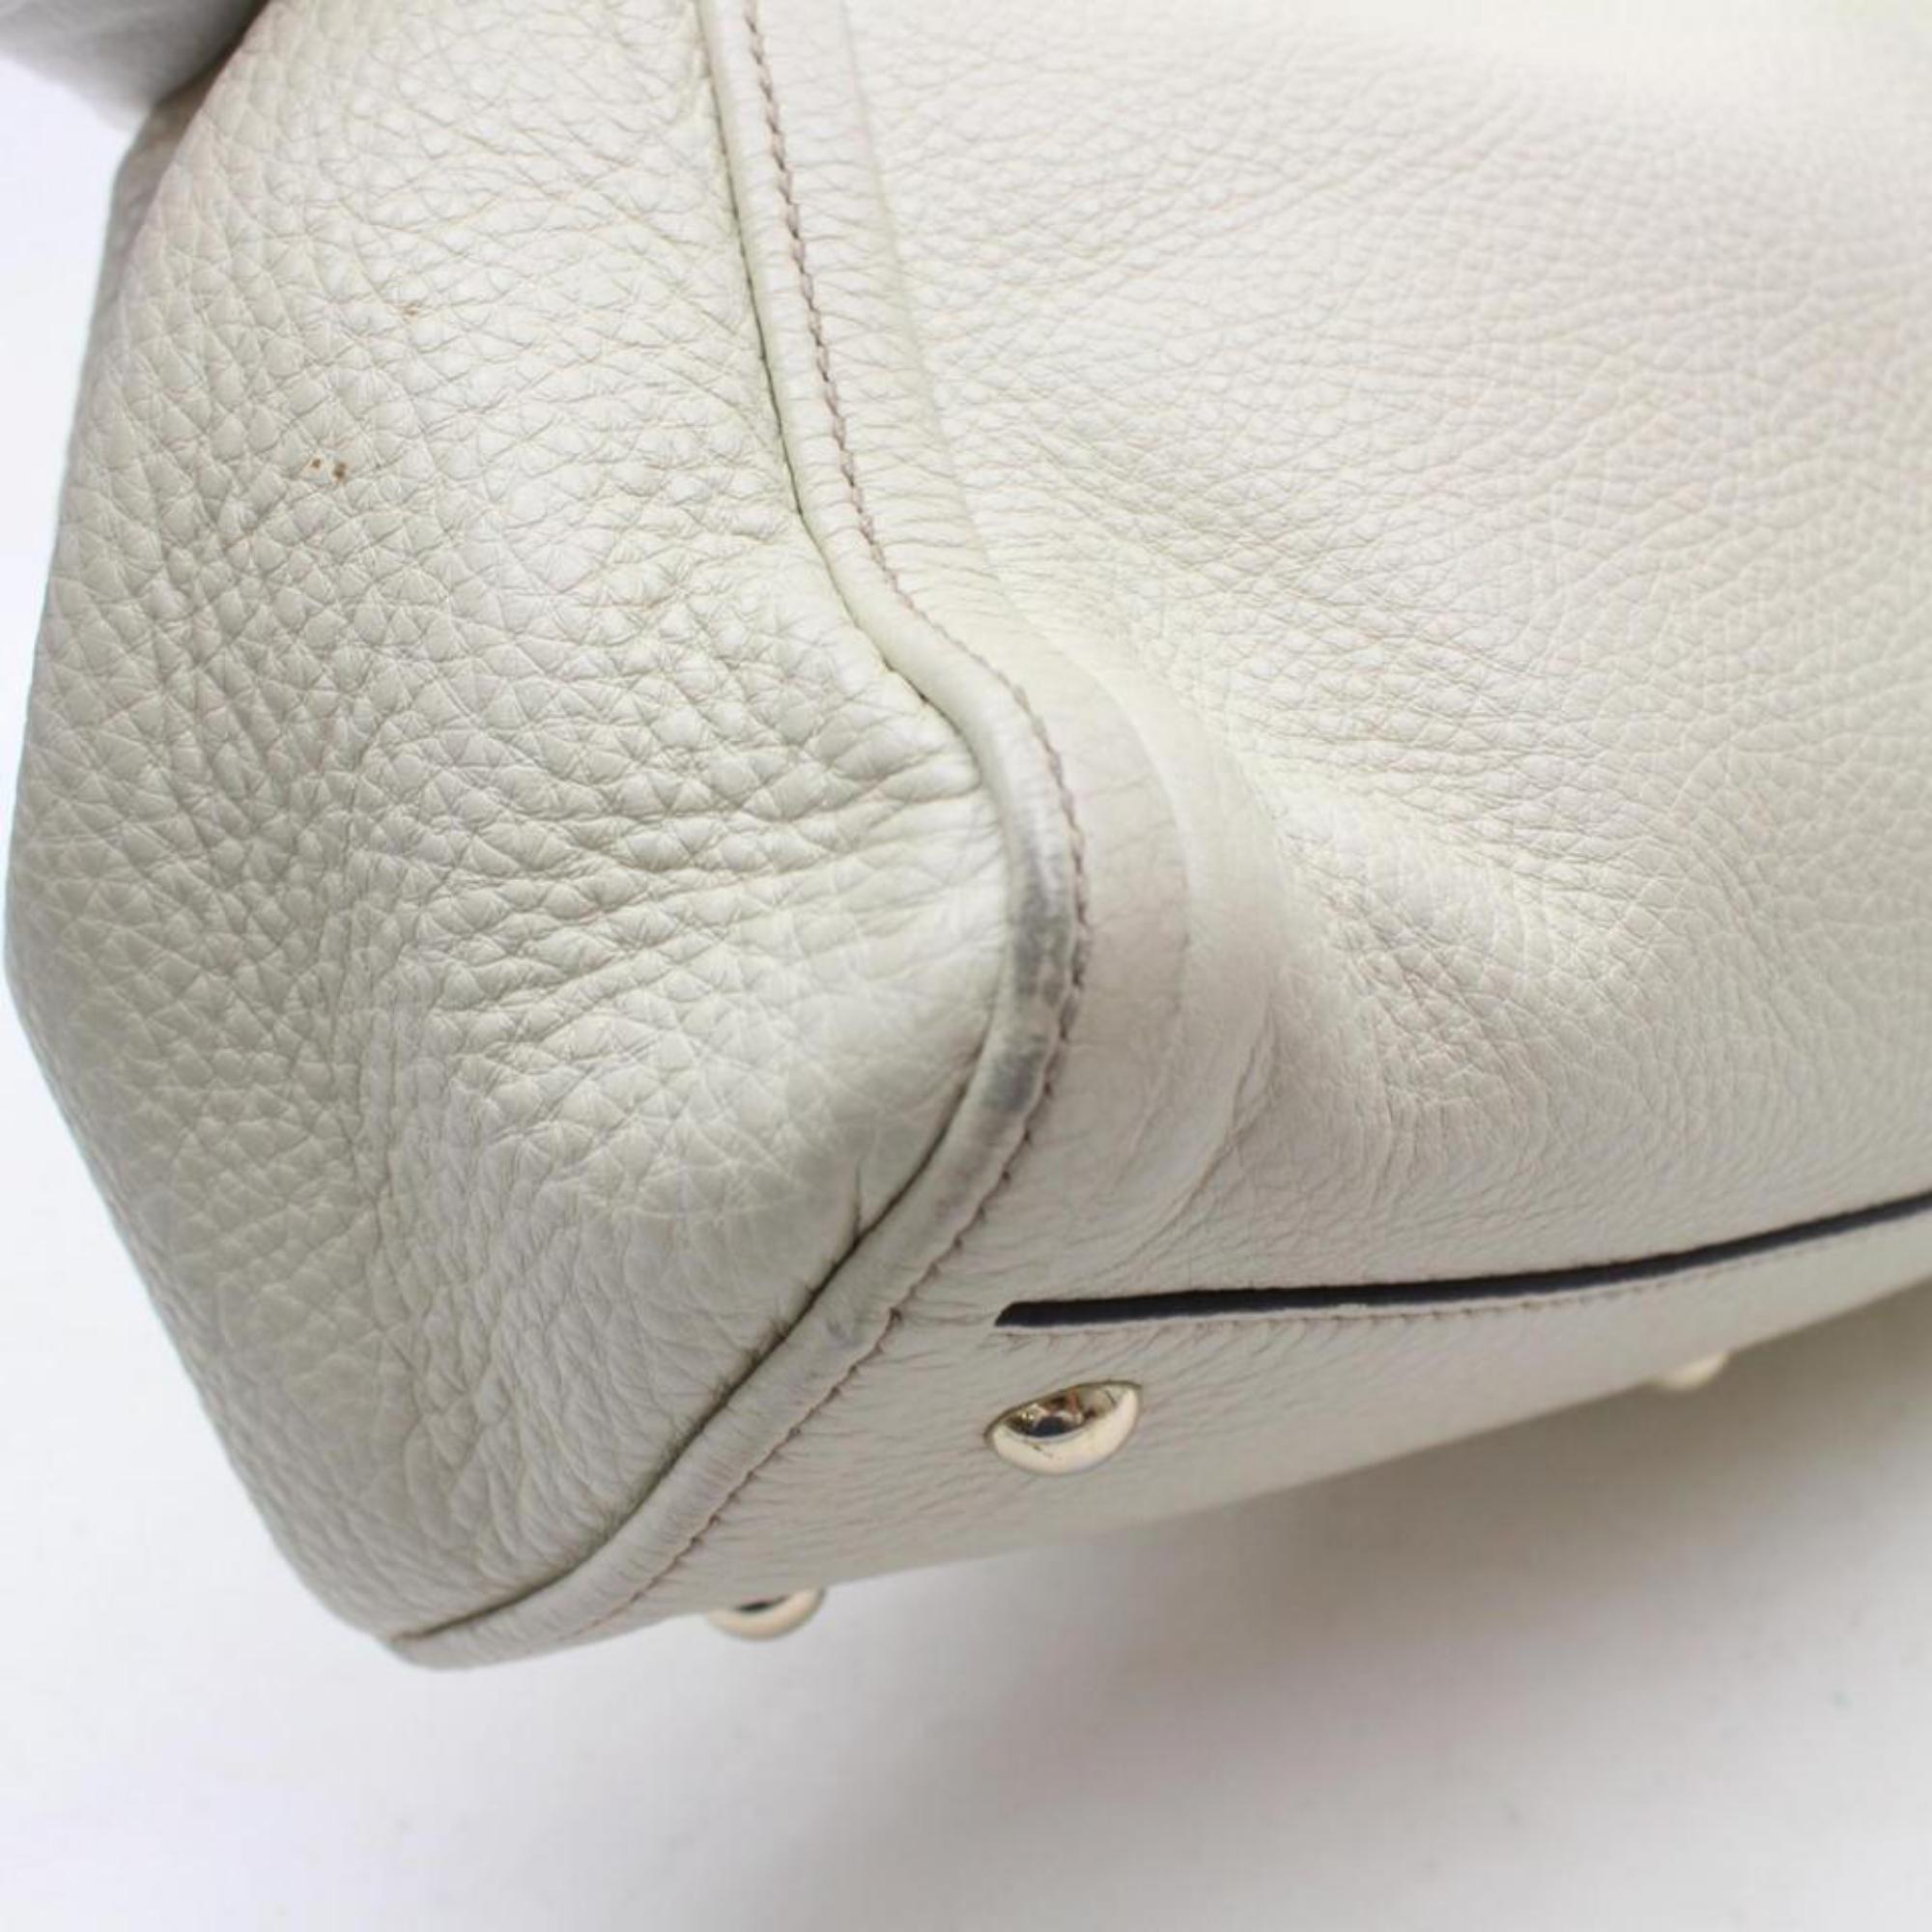 Gucci Soho Convertible Fringe Tassel 868948 Cream Leather Shoulder Bag For Sale 4